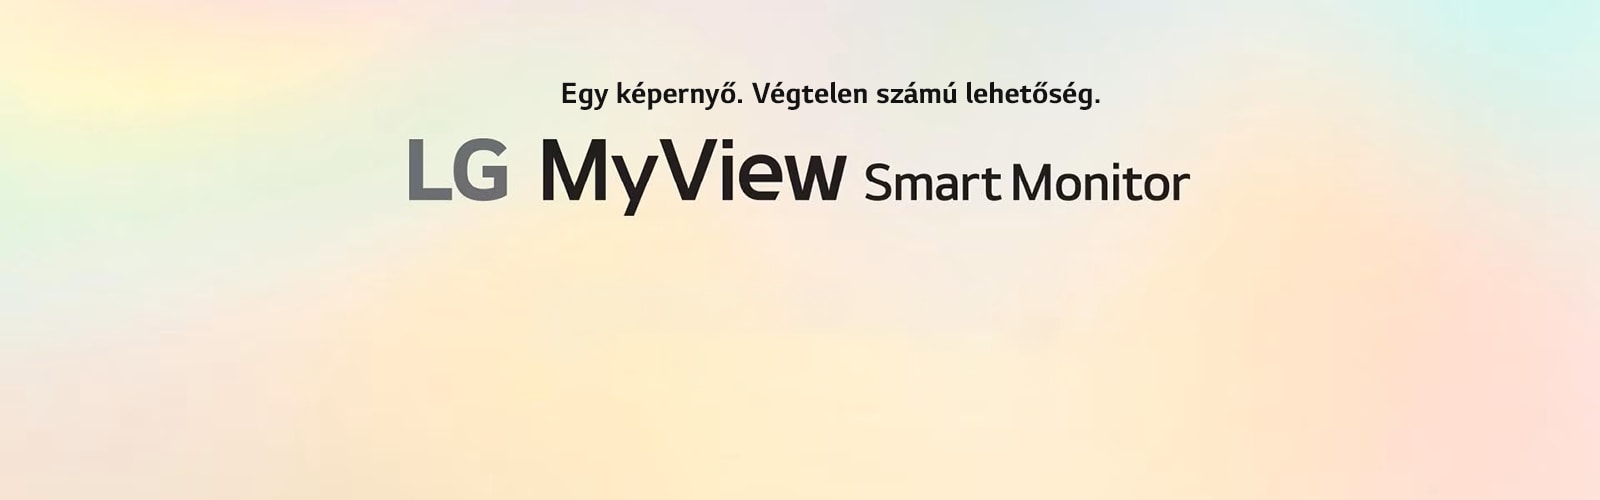 LG MyView Smart Monitor – Egy képernyő. Végtelen számú lehetőség..	